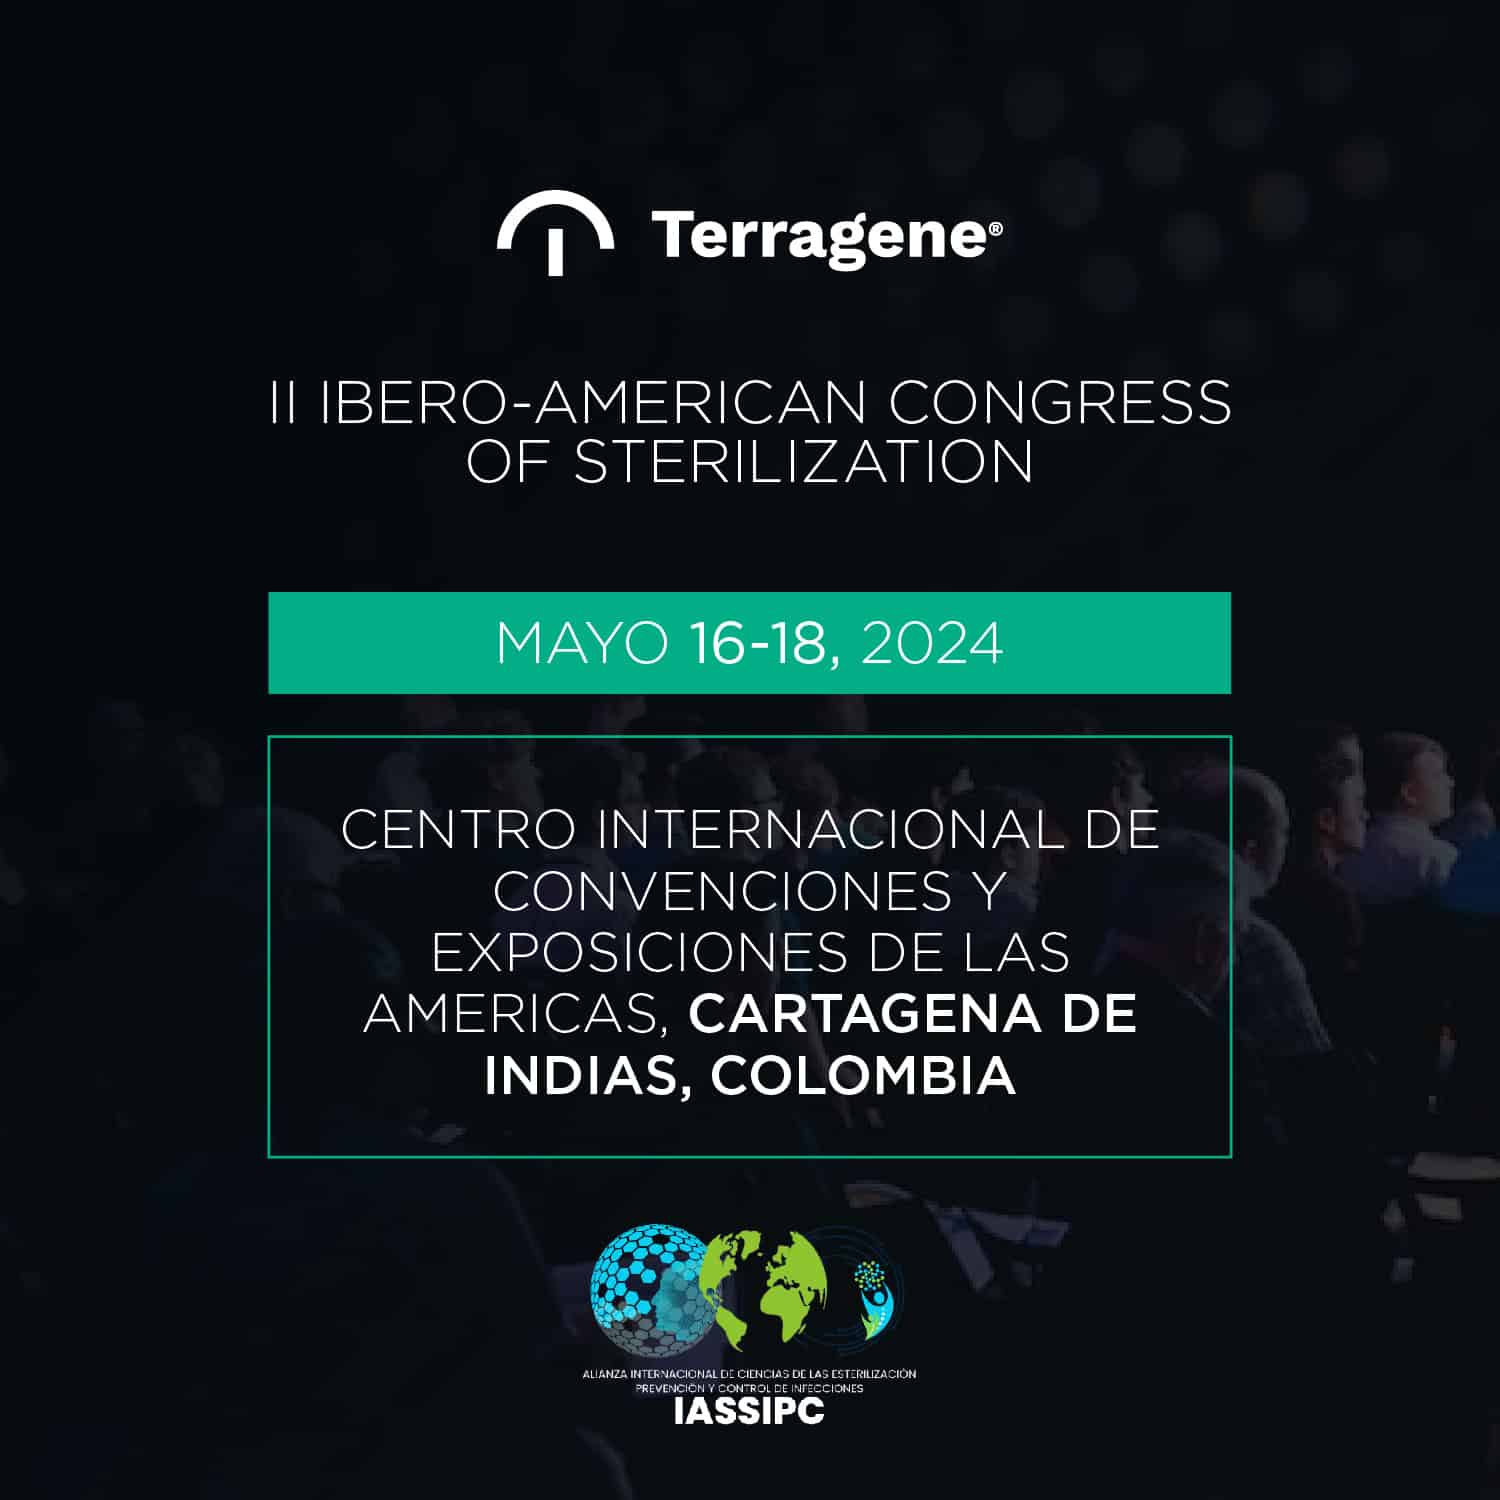 Participation in the II Ibero-American Congress of Sterilization